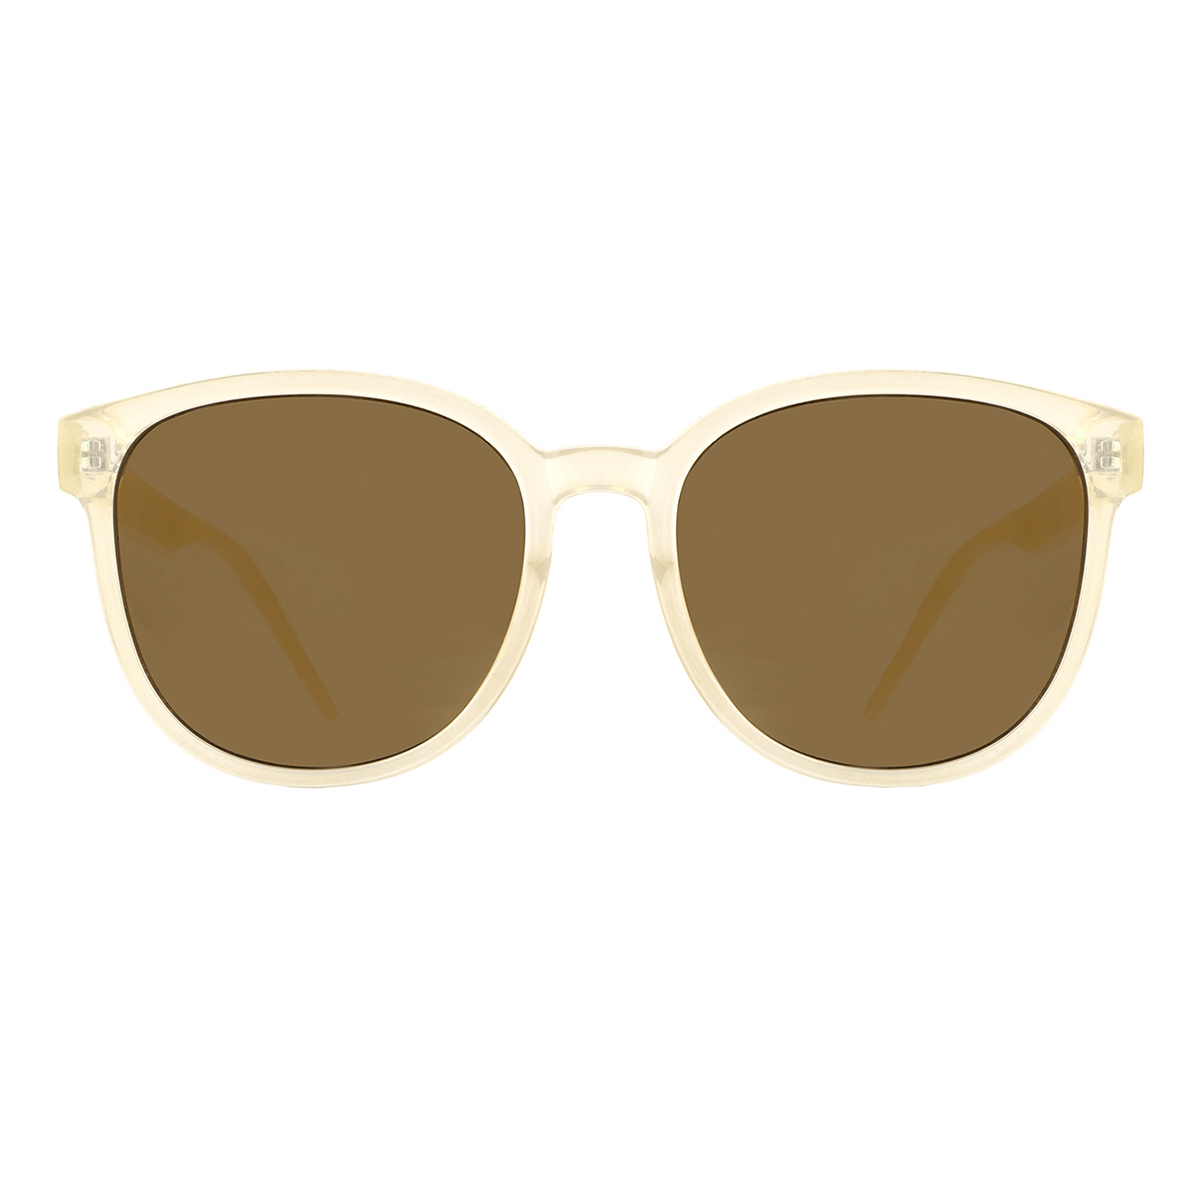 round yellow-tortoiseshell sunglasses